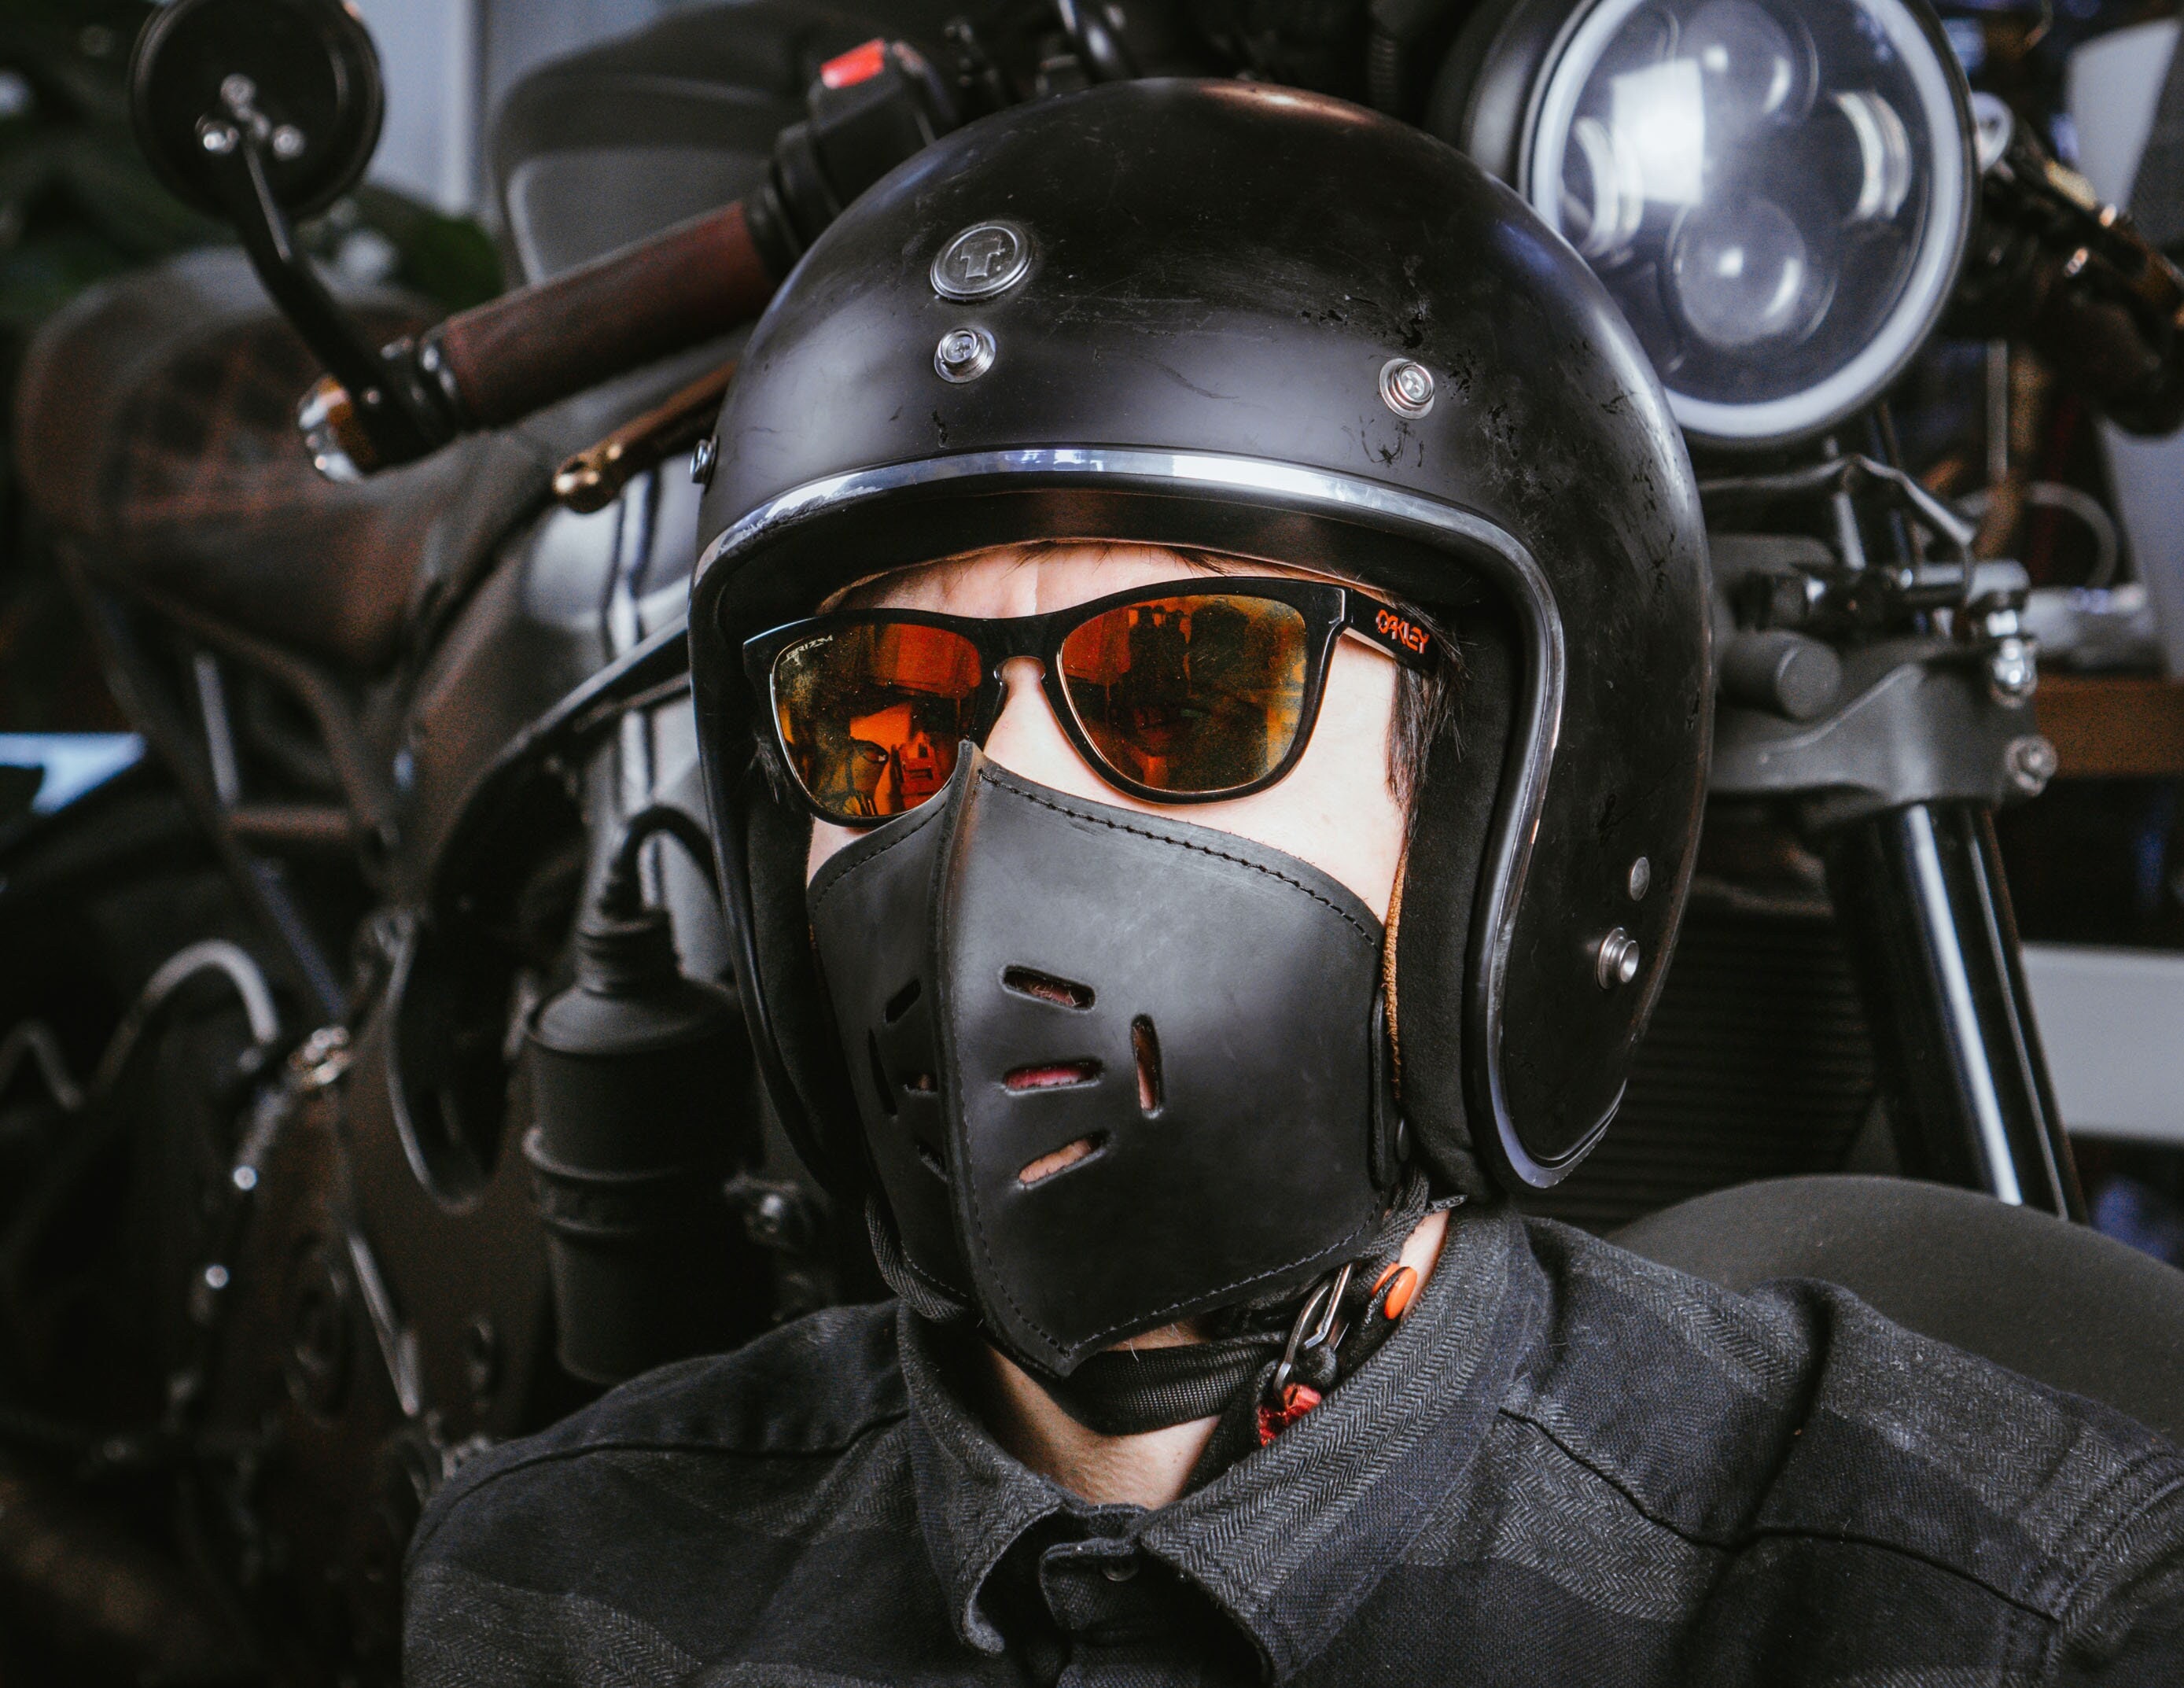 Cagoule masque Gris Foncé lycra trou yeux moto casque vélo